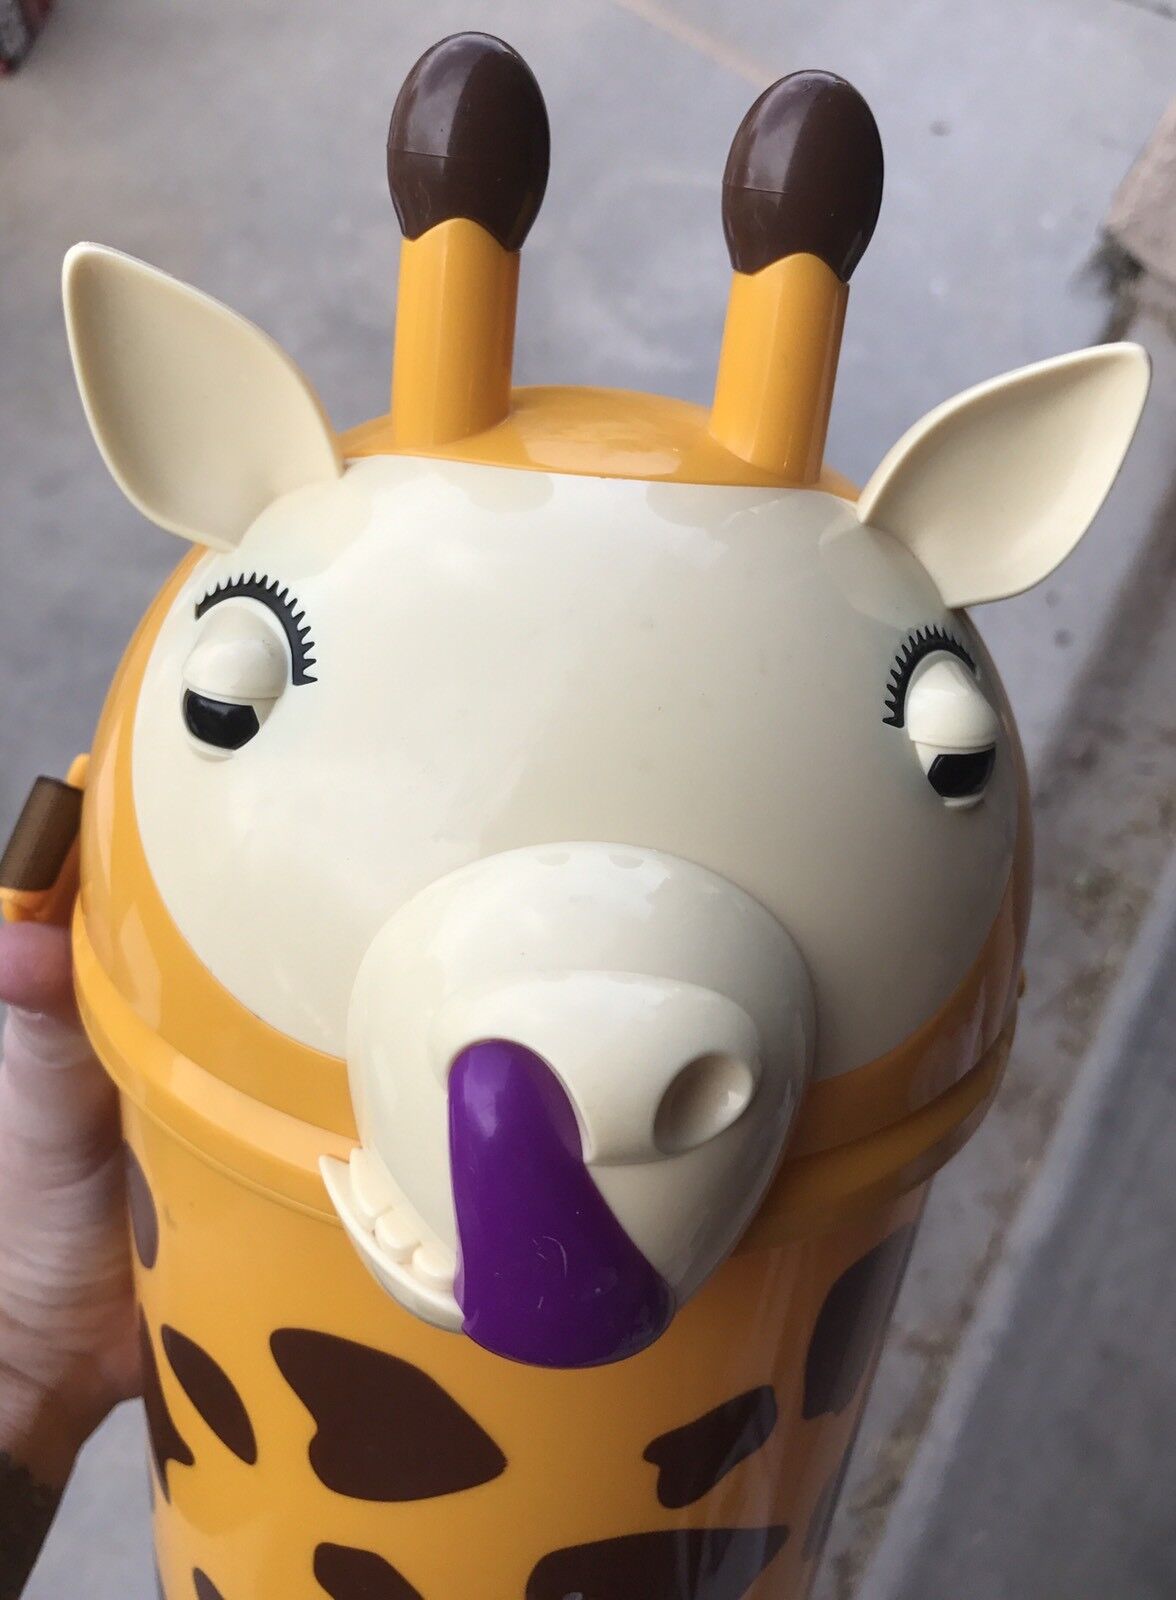 Rare Korean Everland Theme Park Souvenir Collectible Popcorn Tub Bucket Giraffe